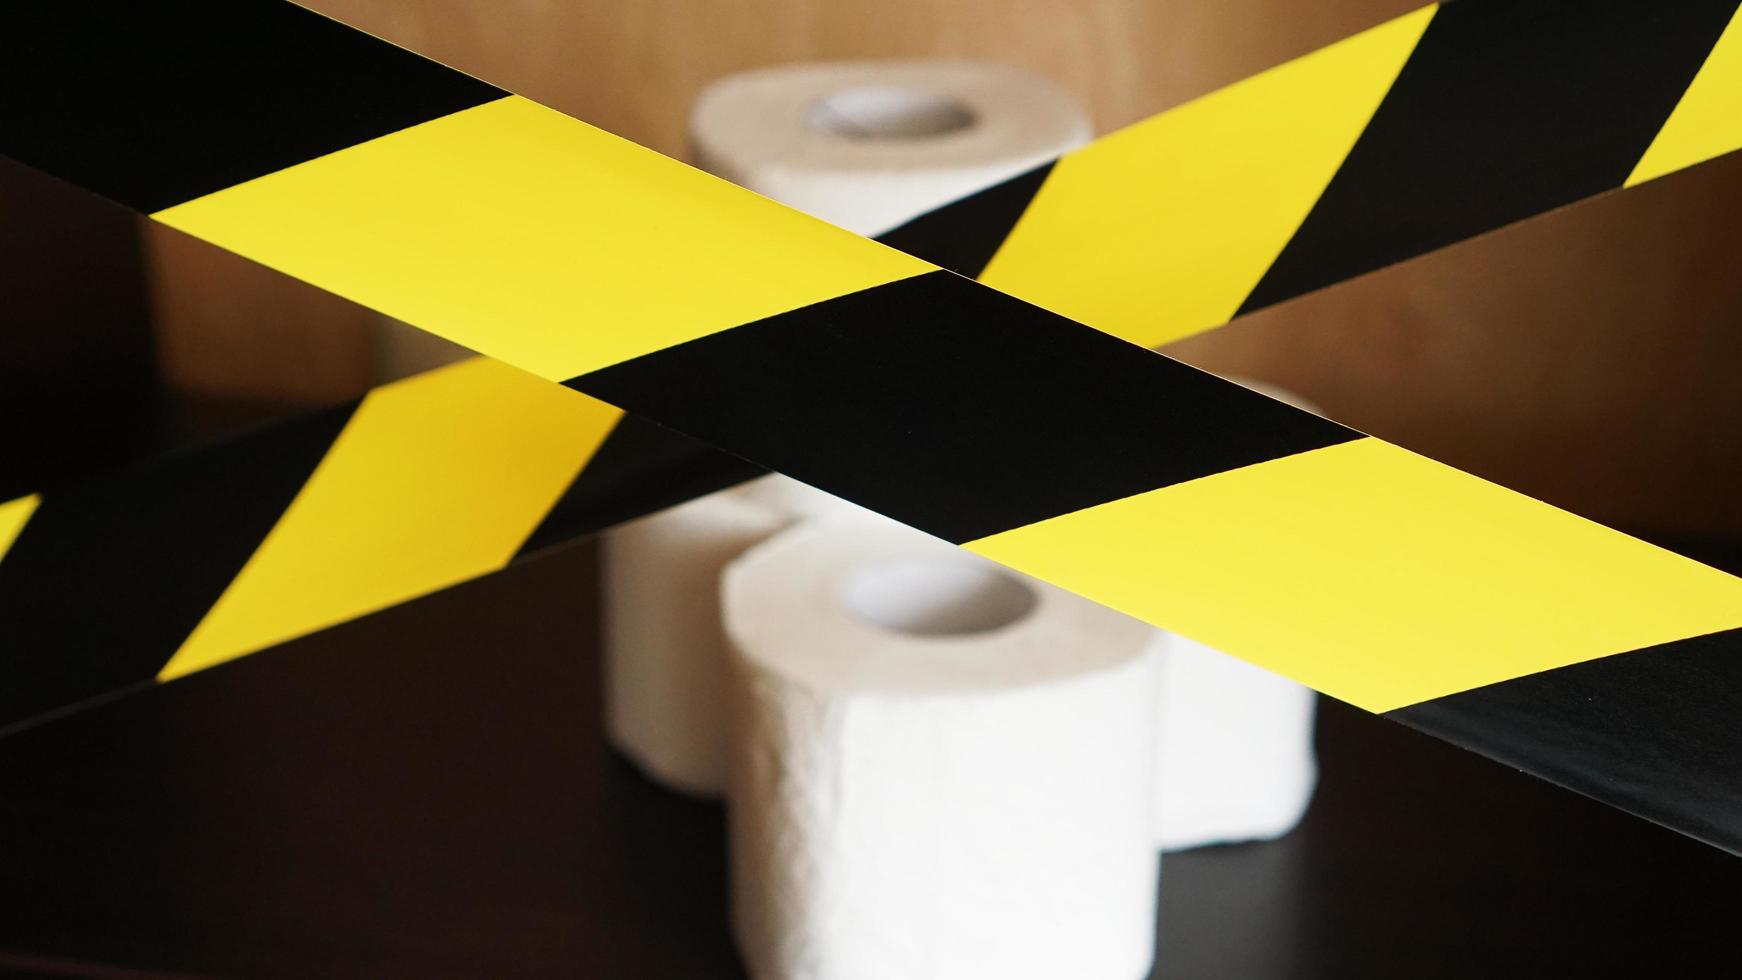 Stop panic - coronavirus. Toilet paper behind the tape photo